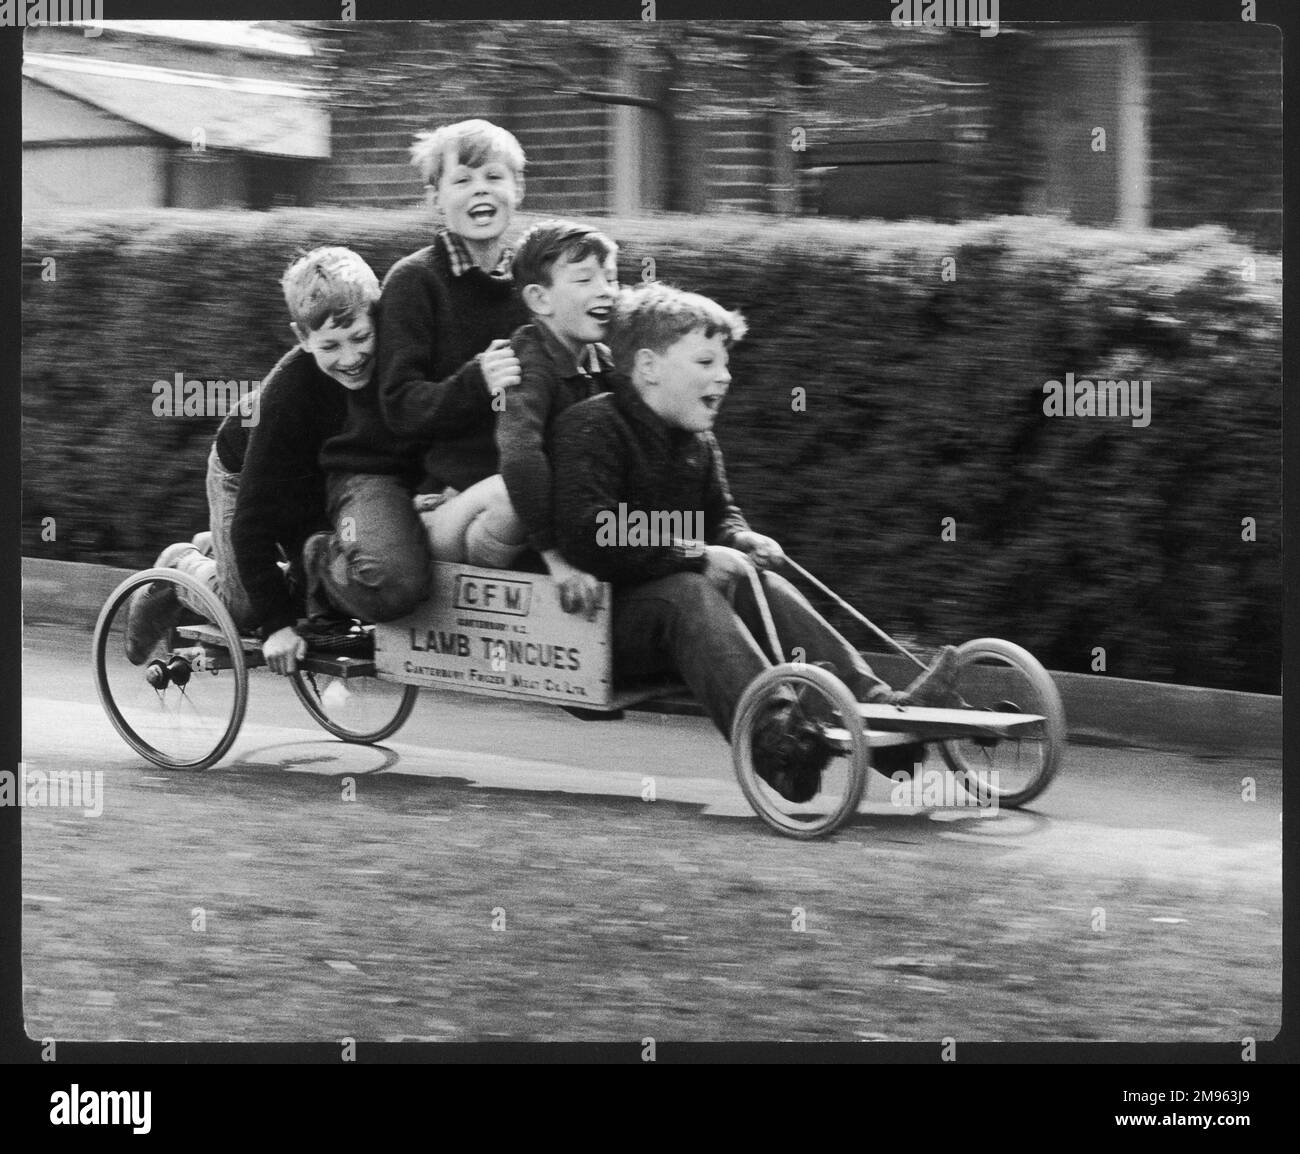 Vier Jungs auf einem selbstgemachten Go-Kart aus einer Kiste, die einst gefrorene Lammzungen enthielt, in Horley, Surrey. Zwei der Jungs gehören dem Fotografen und sie haben alle Spaß. Stockfoto